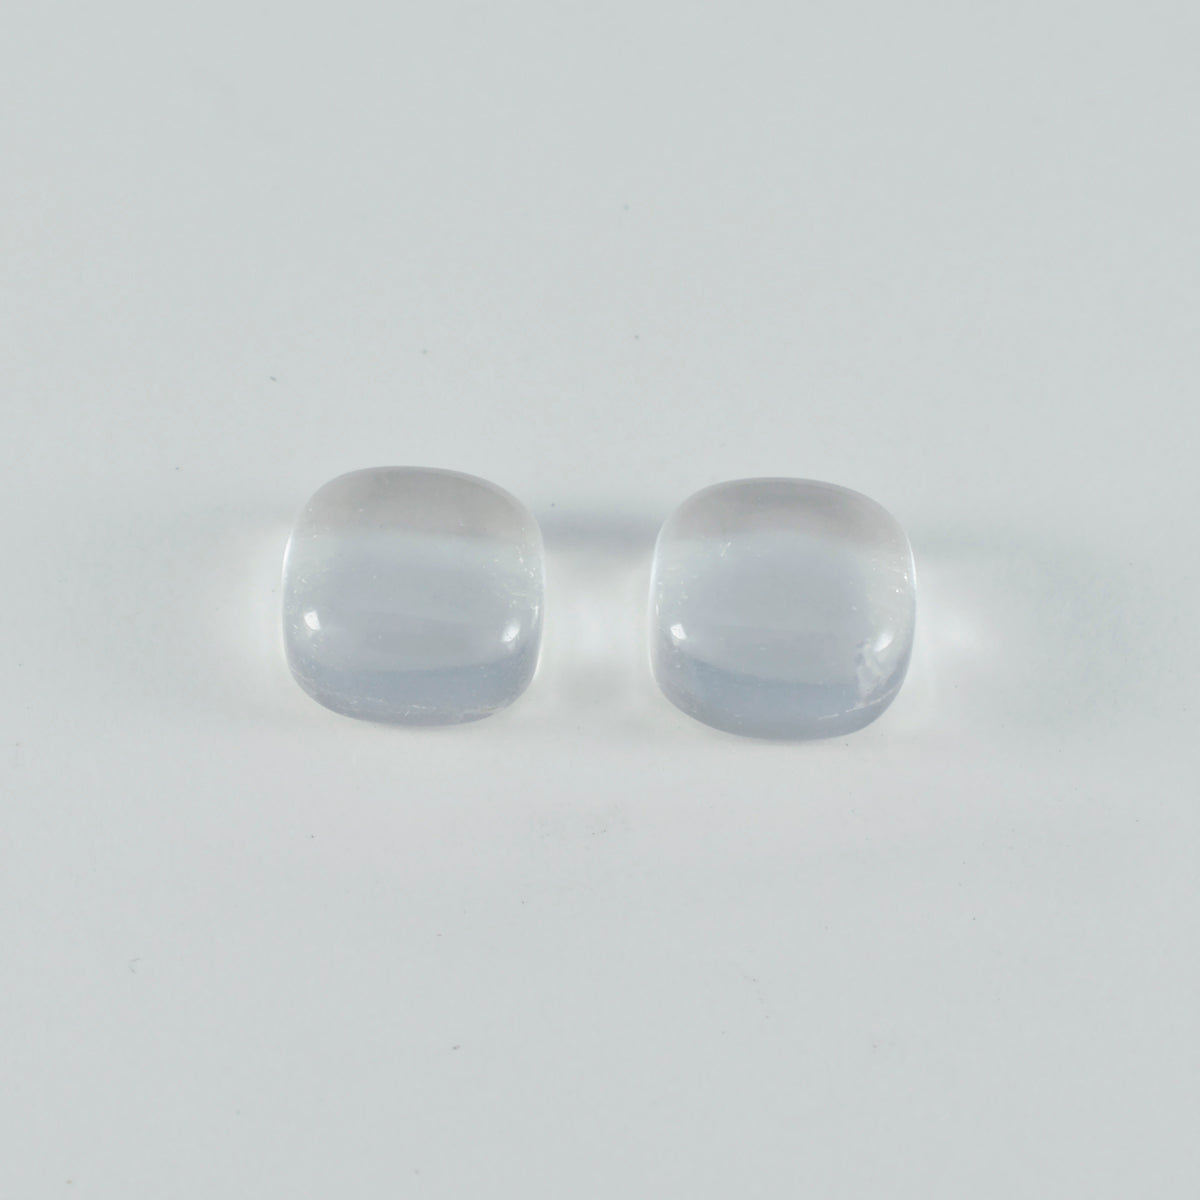 Riyogems 1 cabujón de cuarzo de cristal blanco de 10x10 mm con forma de cojín, piedra preciosa suelta de buena calidad